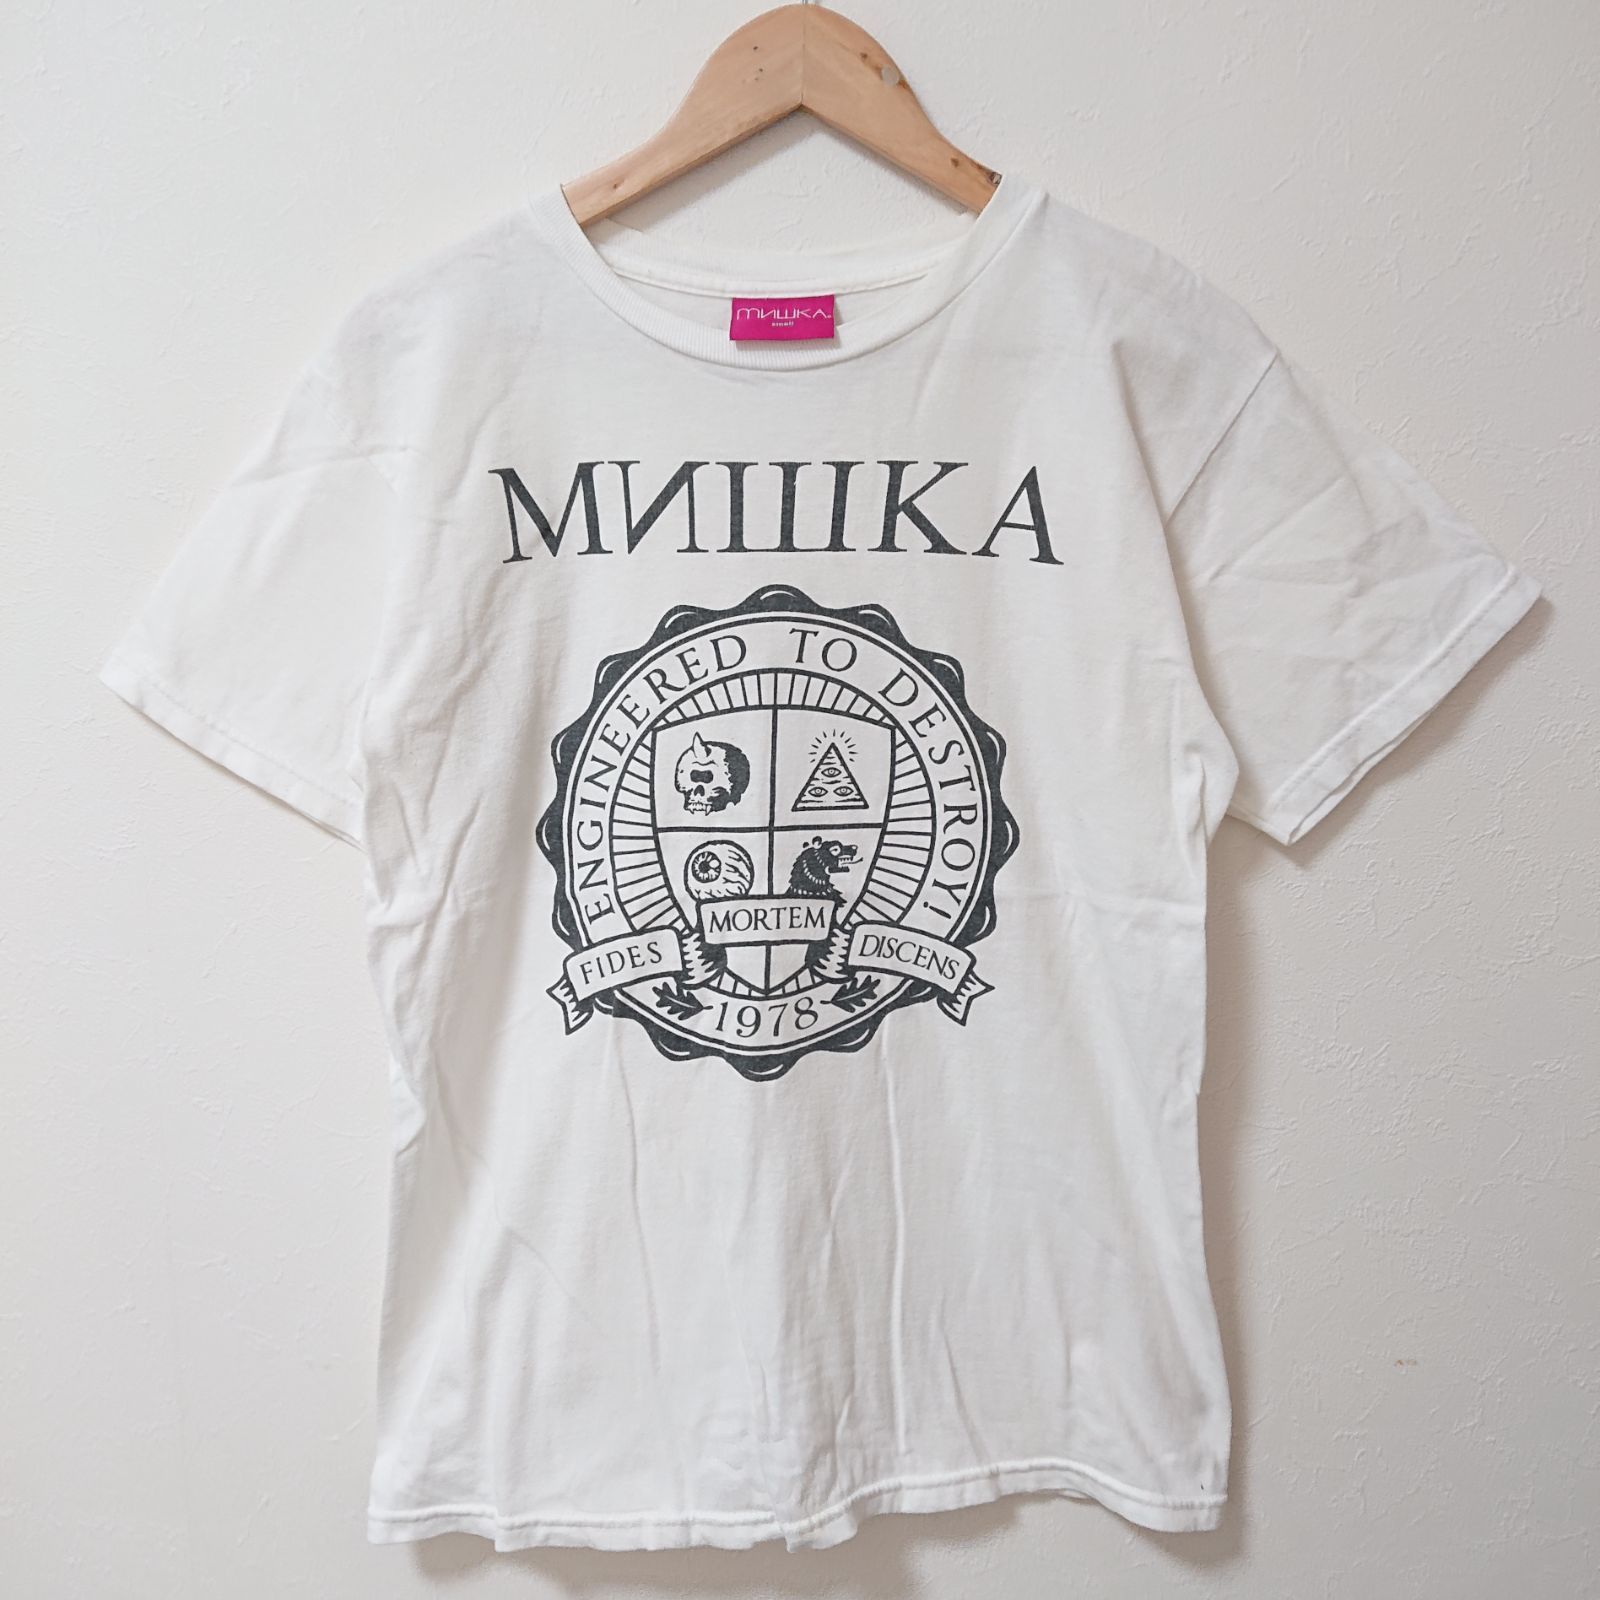 w^)b MNWKA MISHKA ミシカ 半袖 Tシャツ ブランドロゴ ロゴ